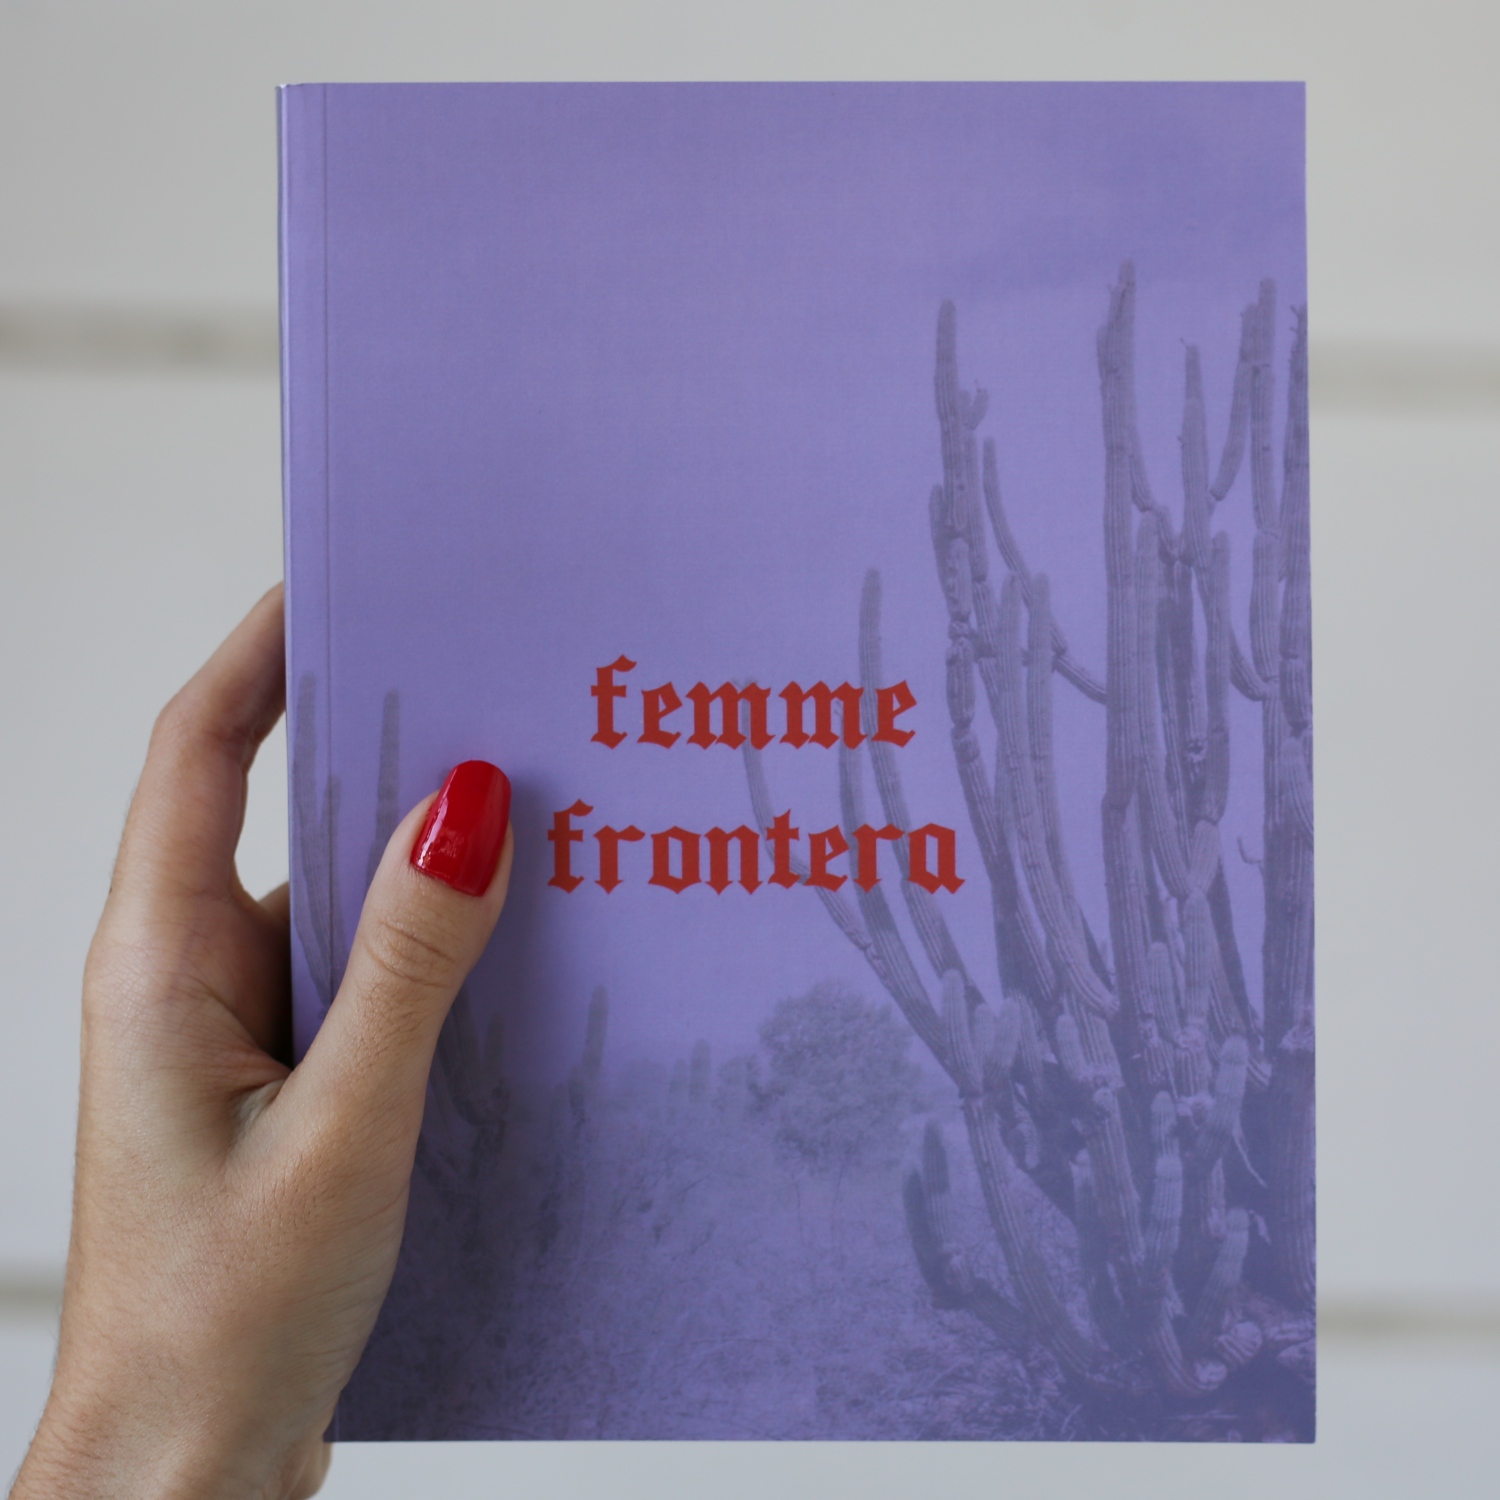    Femme Frontera  is an award winning photography book...